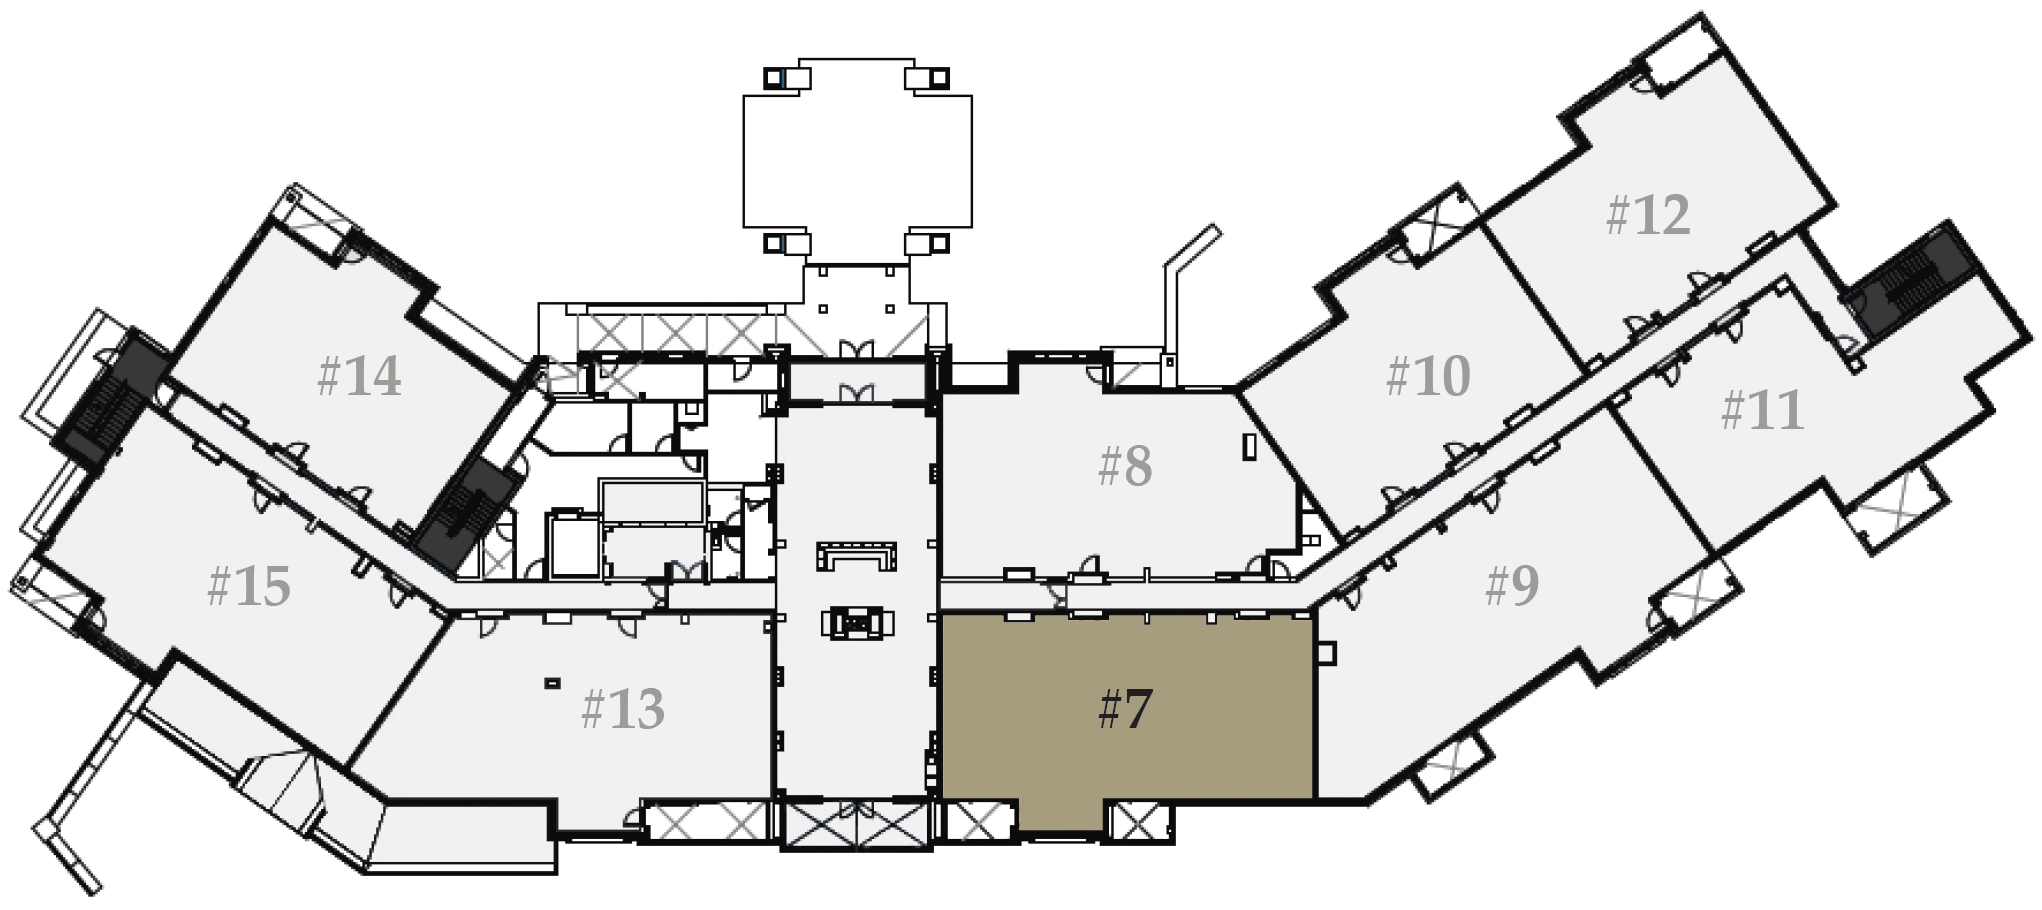 4-bedroom residence floor plate